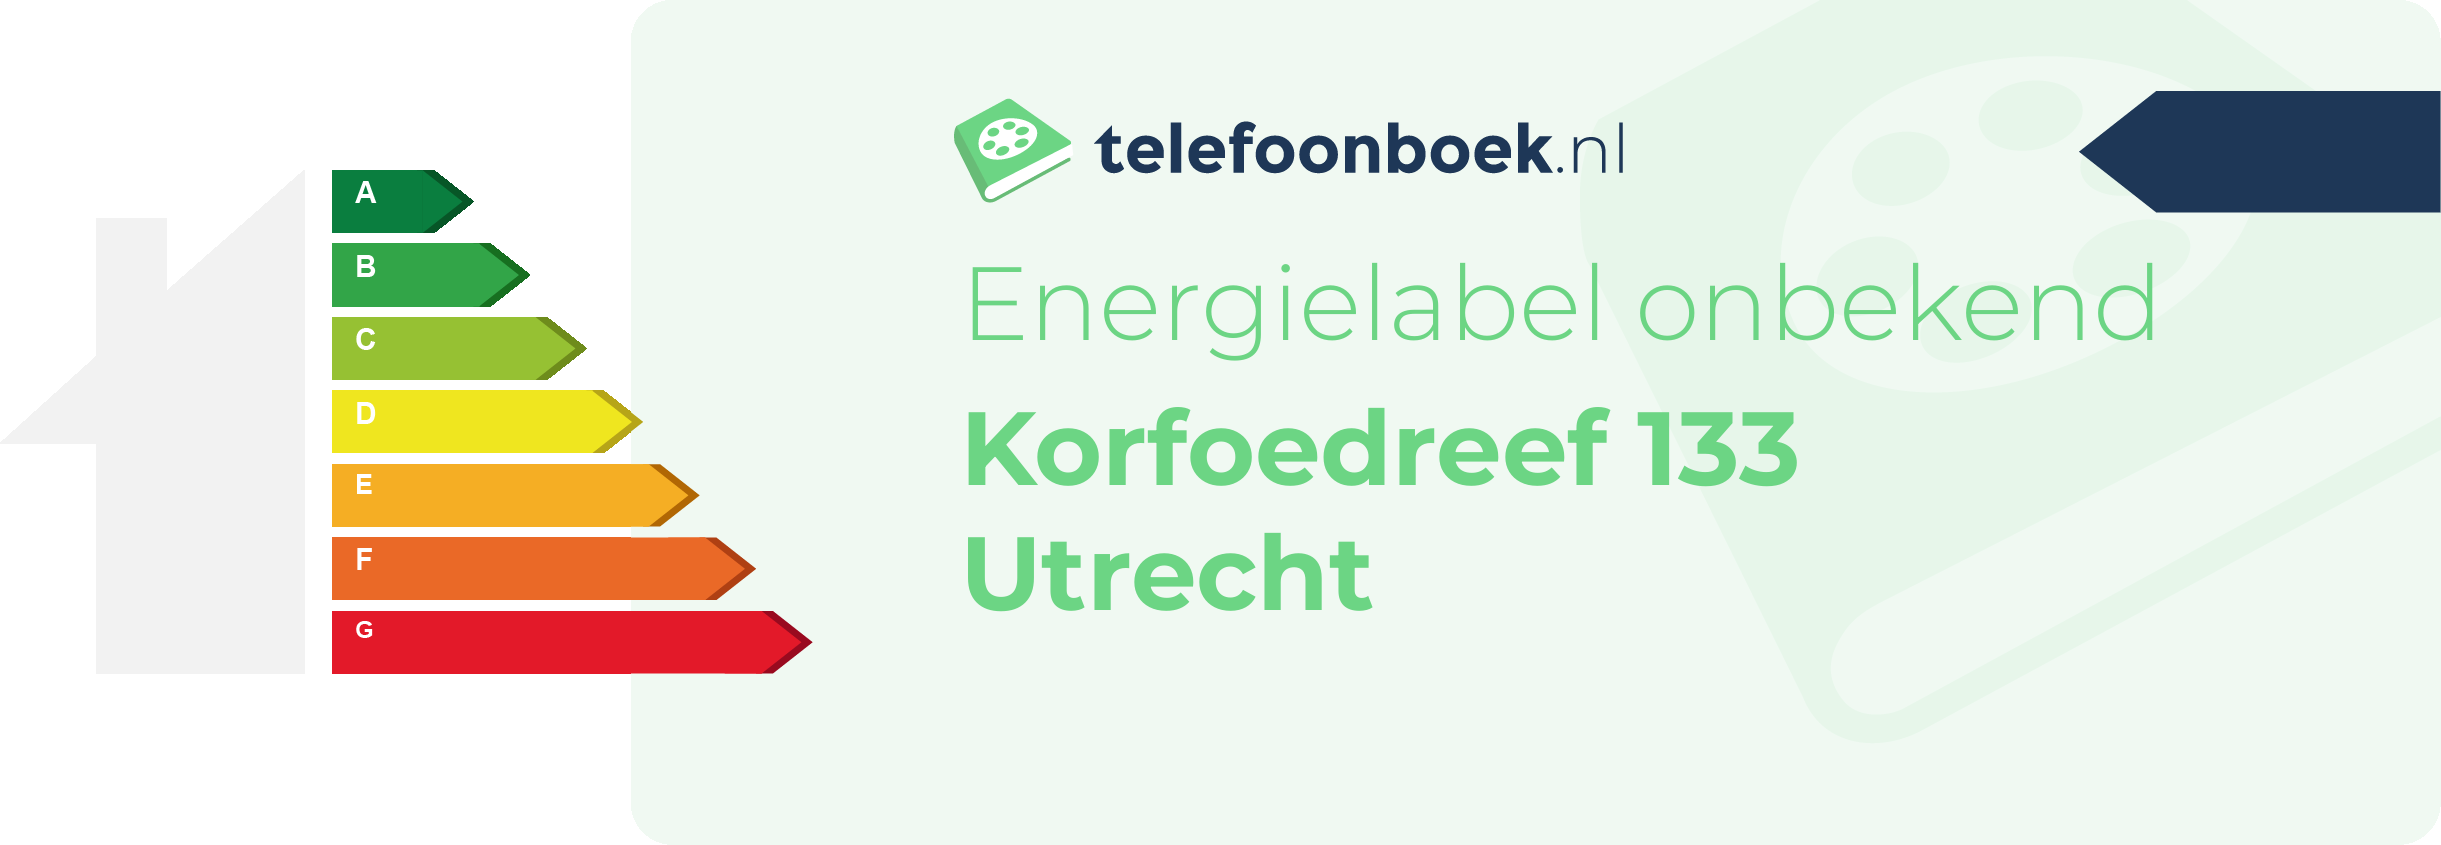 Energielabel Korfoedreef 133 Utrecht